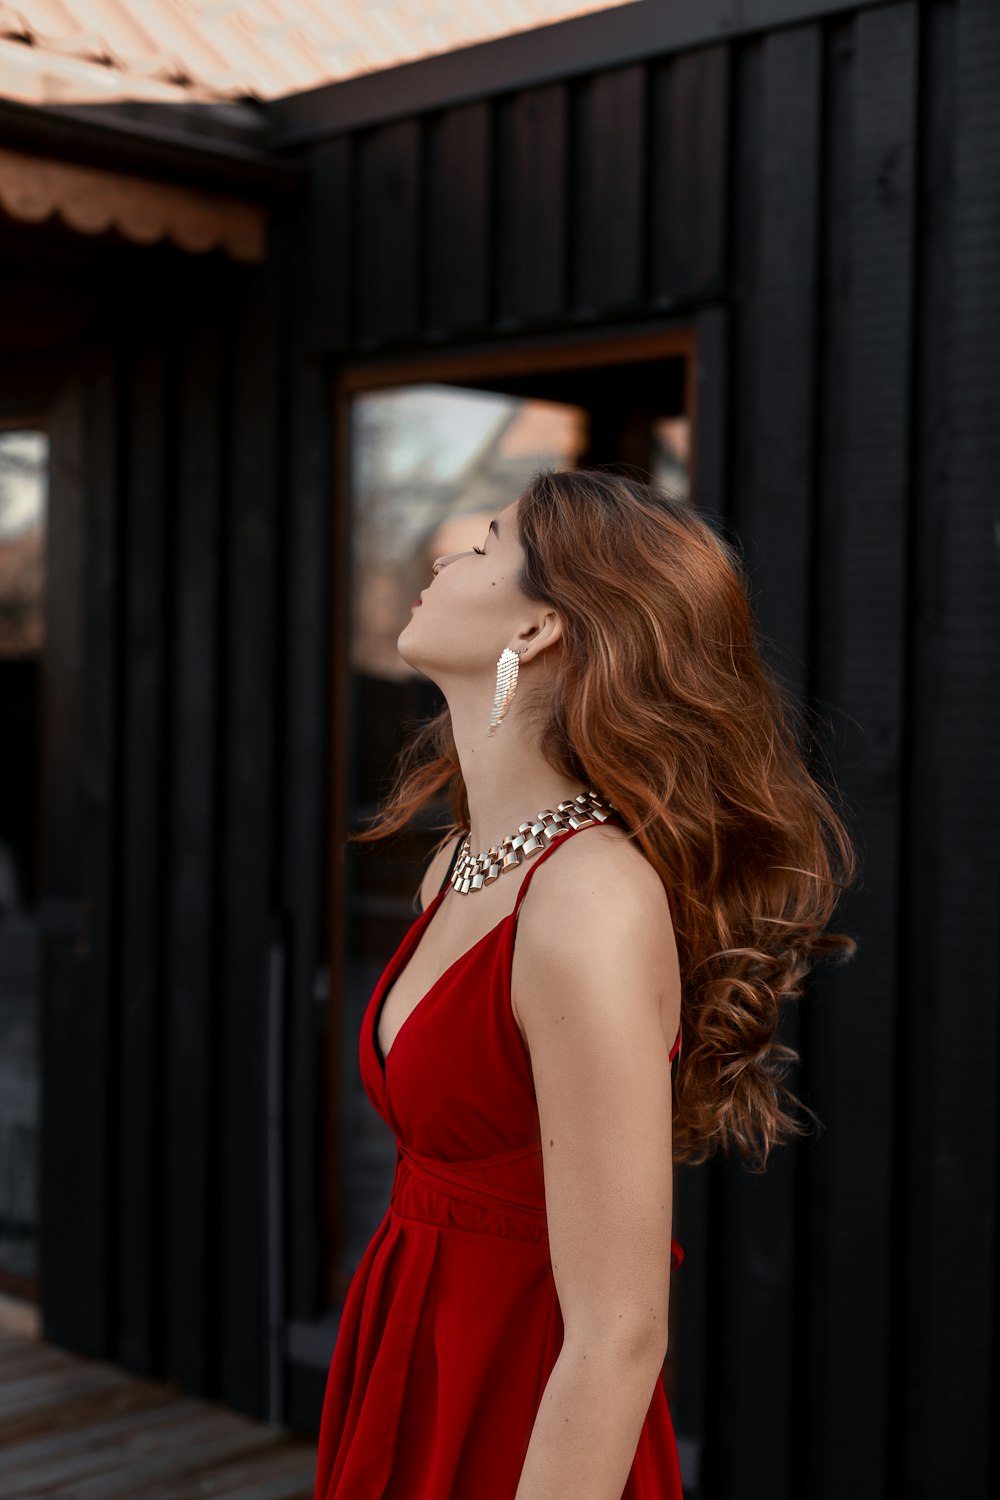 Una mujer con un vestido rojo mirando hacia arriba